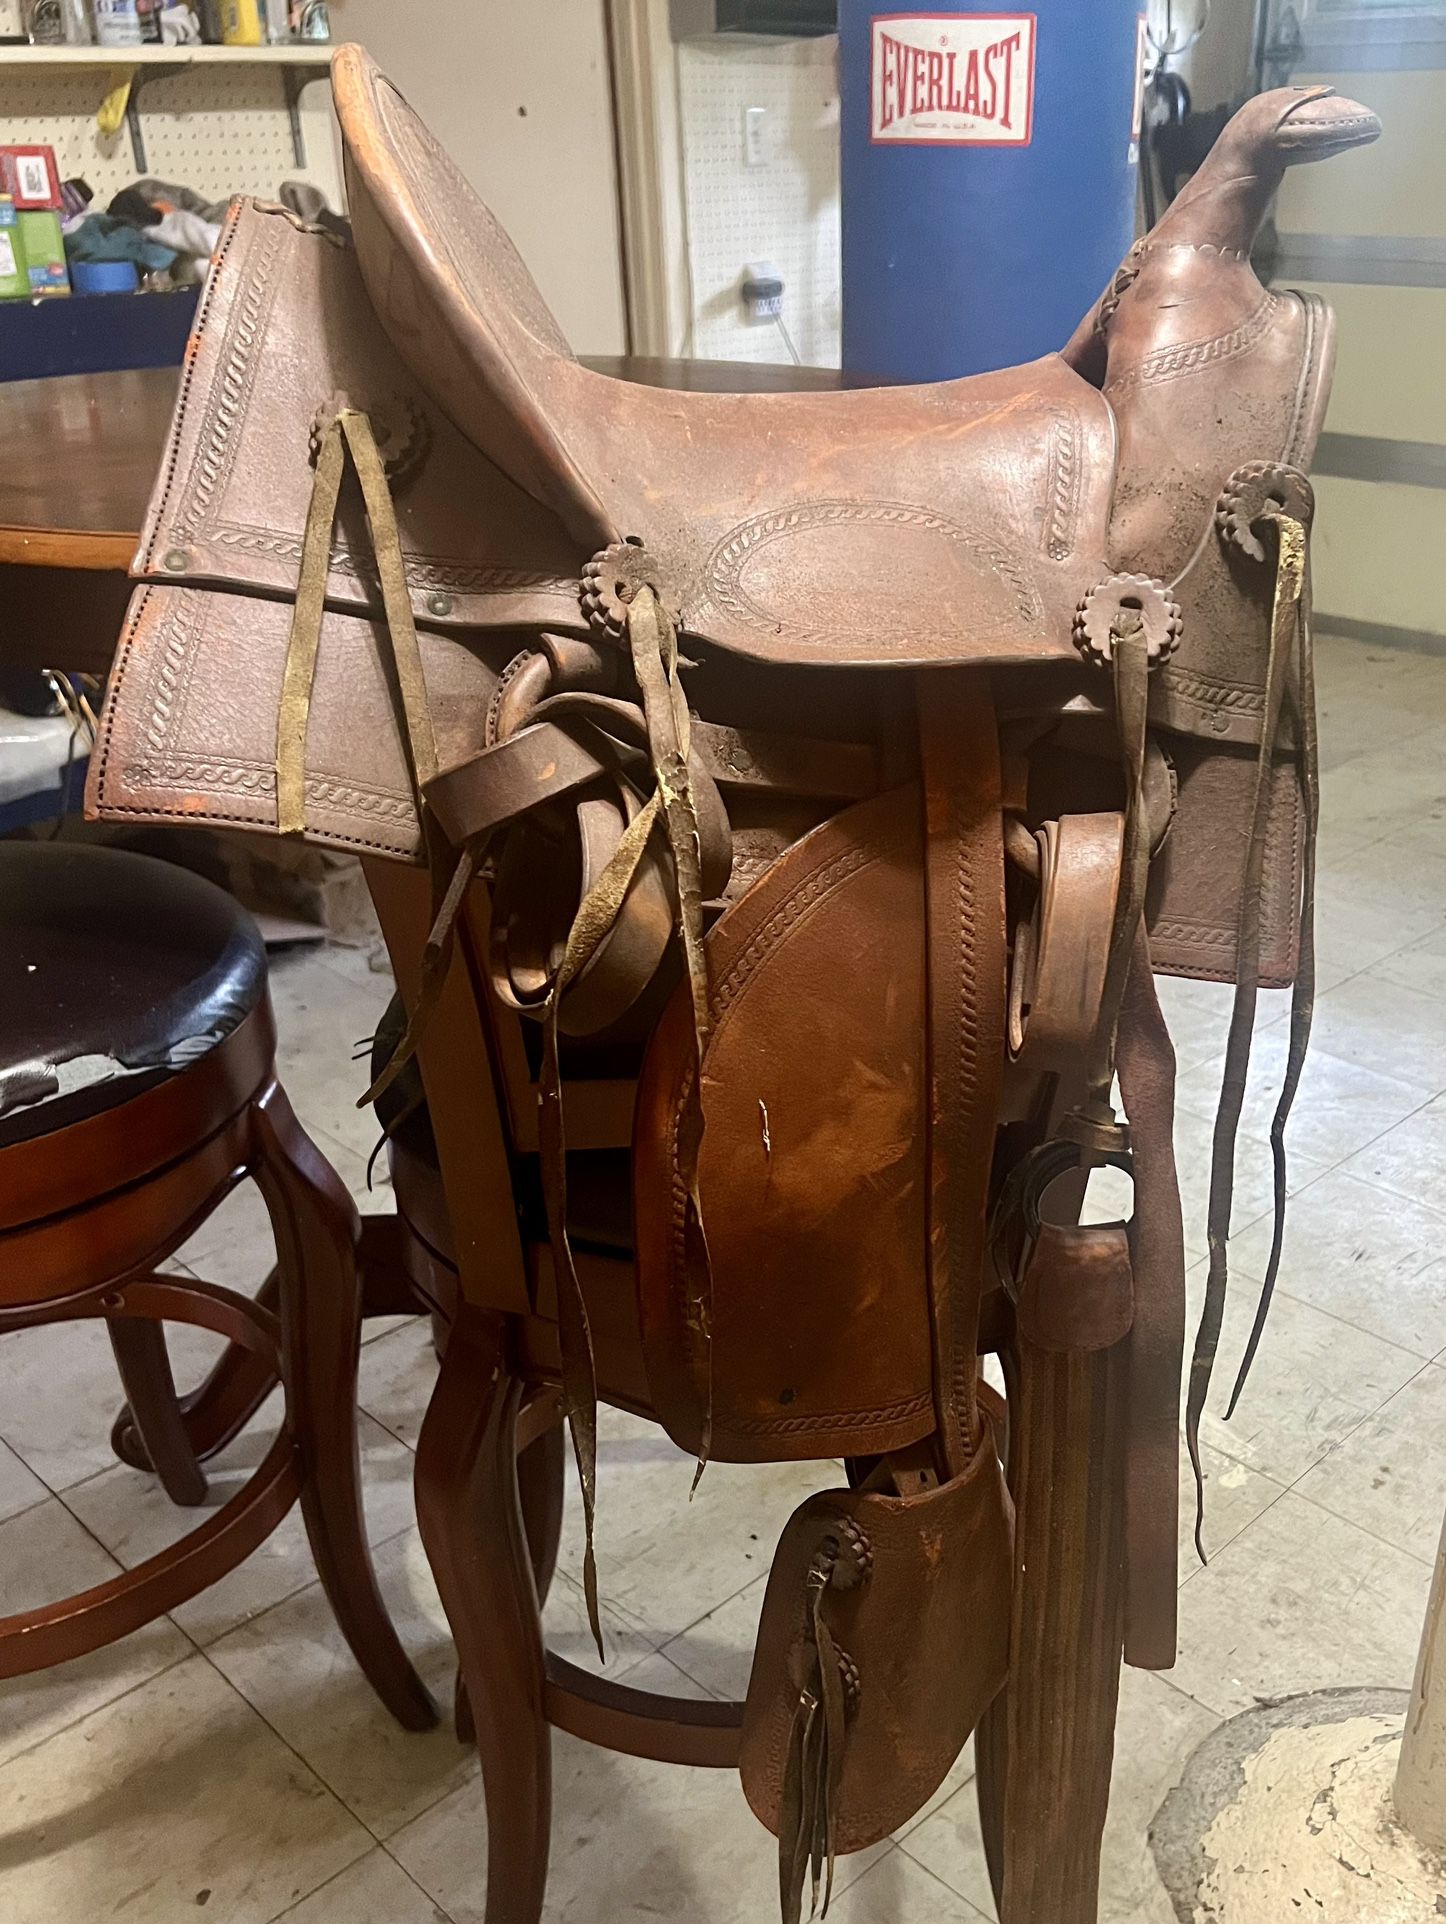 leather horse saddle